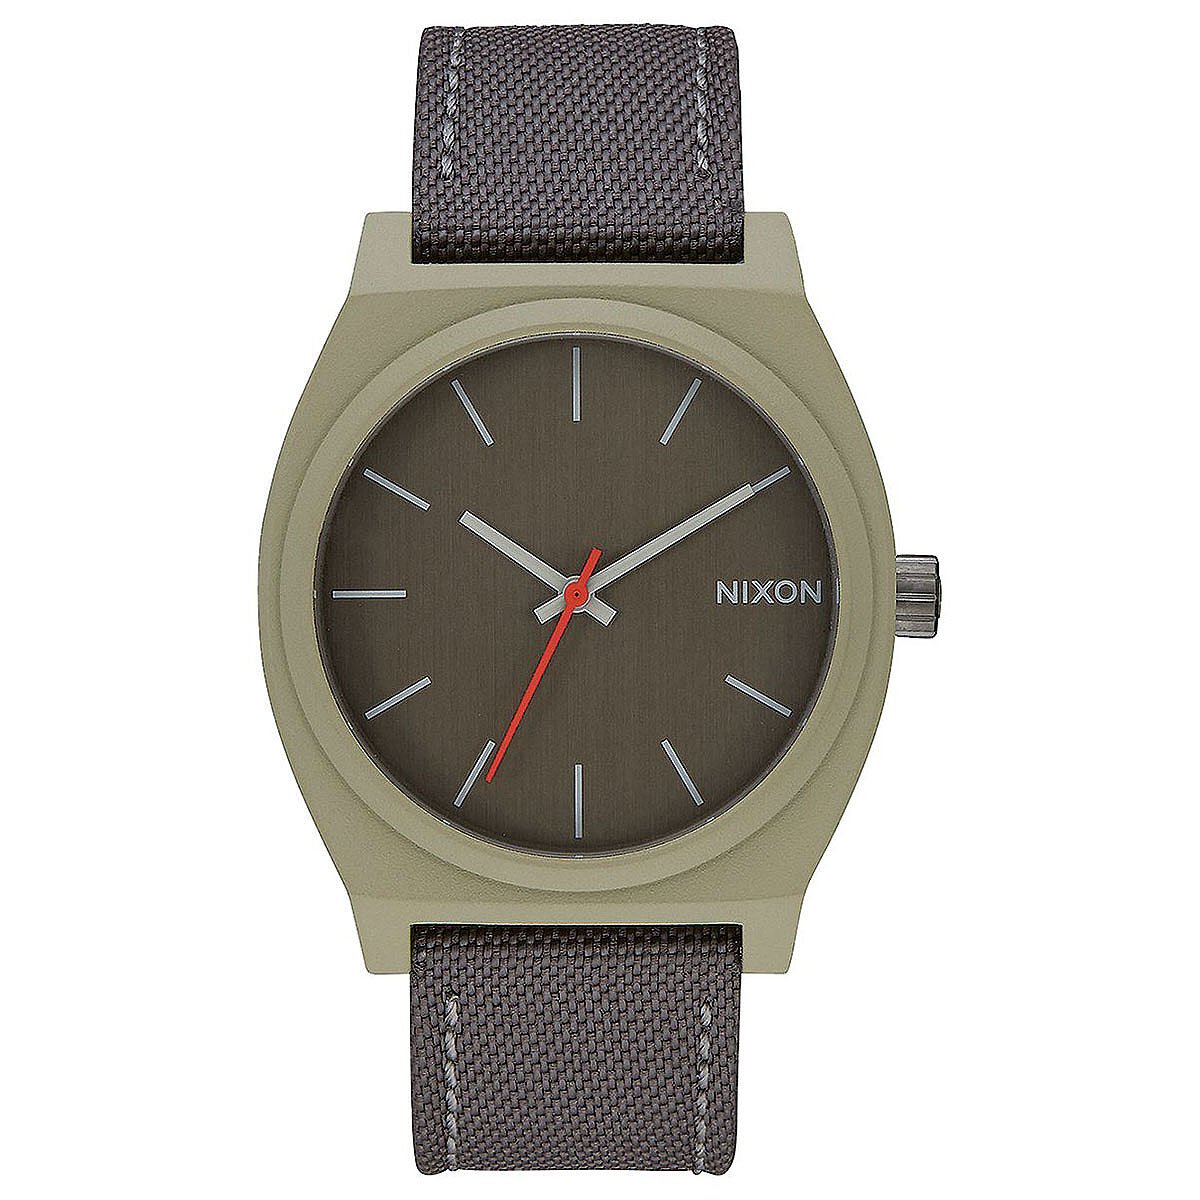 Sage teller. Часы Никсон тайм Теллер. Nixon часы производитель. Купить часы Nixon time Teller. Watch Nixon Aqua positive.